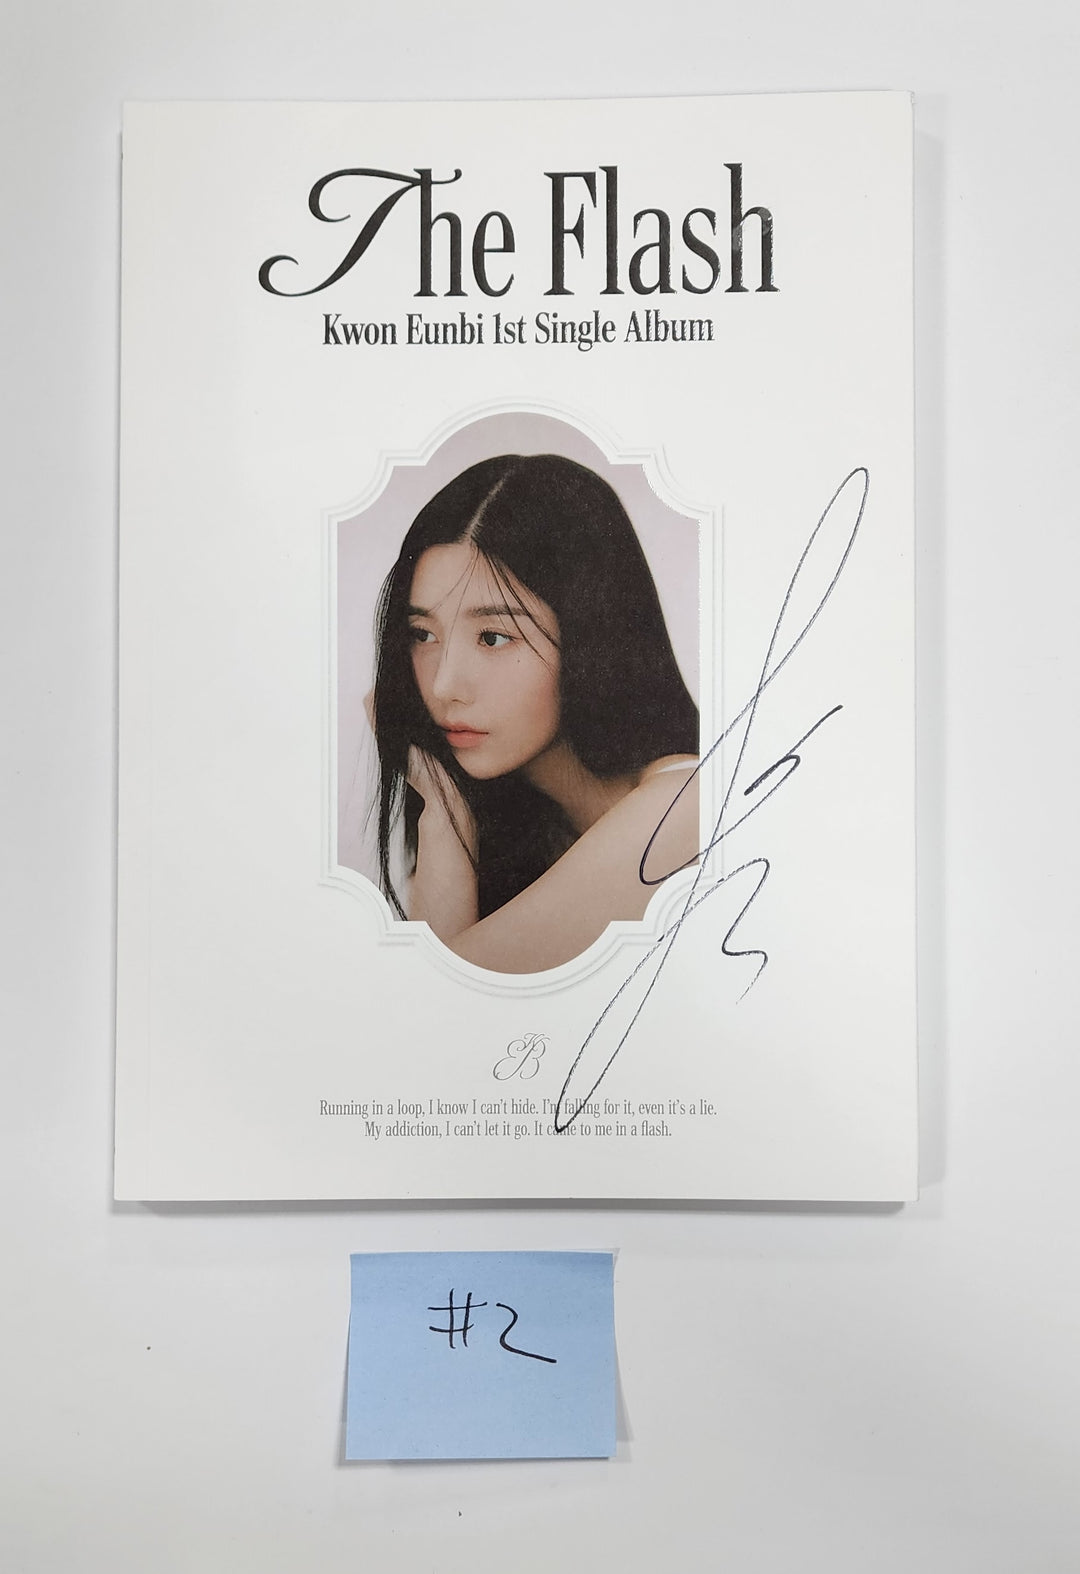 Kwon Eunbi 1st single "The Flash" - Hand Autographed(Signed) Promo Album